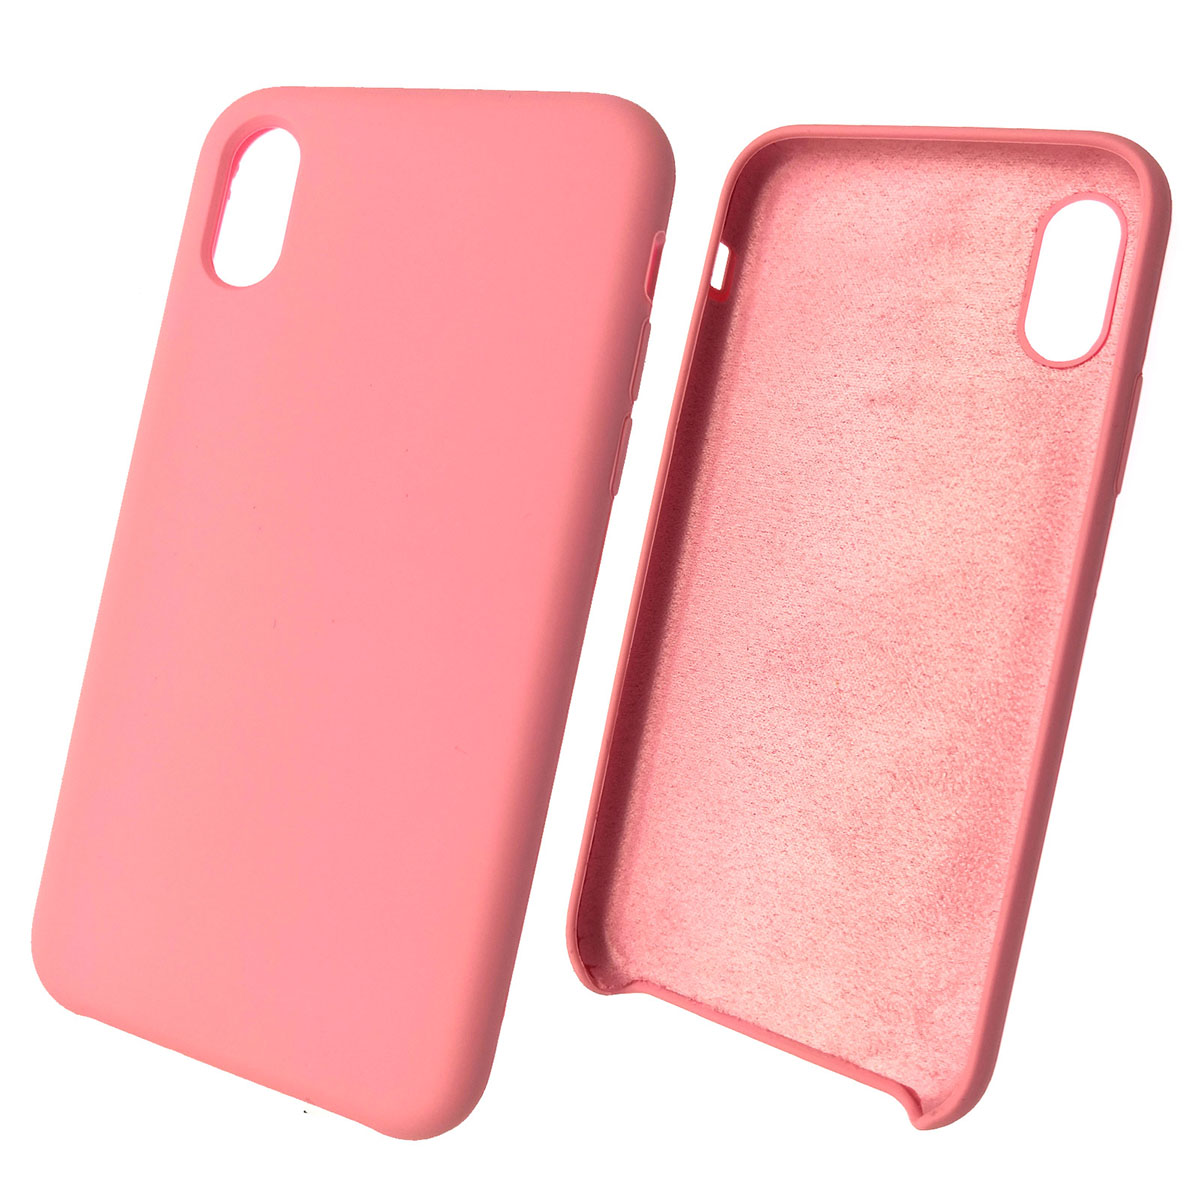 Чехол накладка Silicon Case для APPLE iPhone X, XS, силикон, бархат, цвет розовый песок